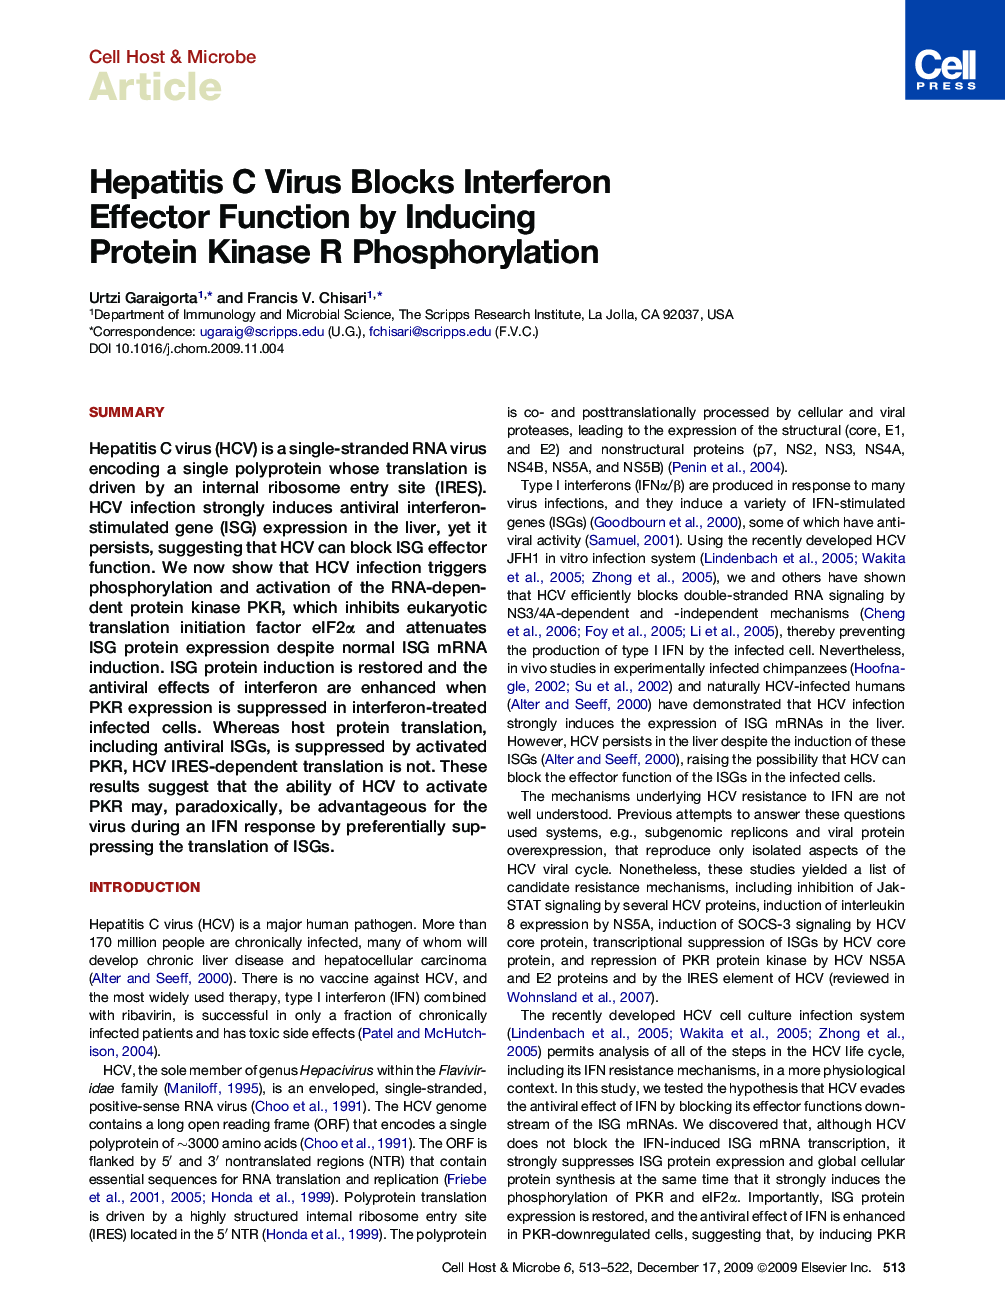 Hepatitis C Virus Blocks Interferon Effector Function by Inducing Protein Kinase R Phosphorylation